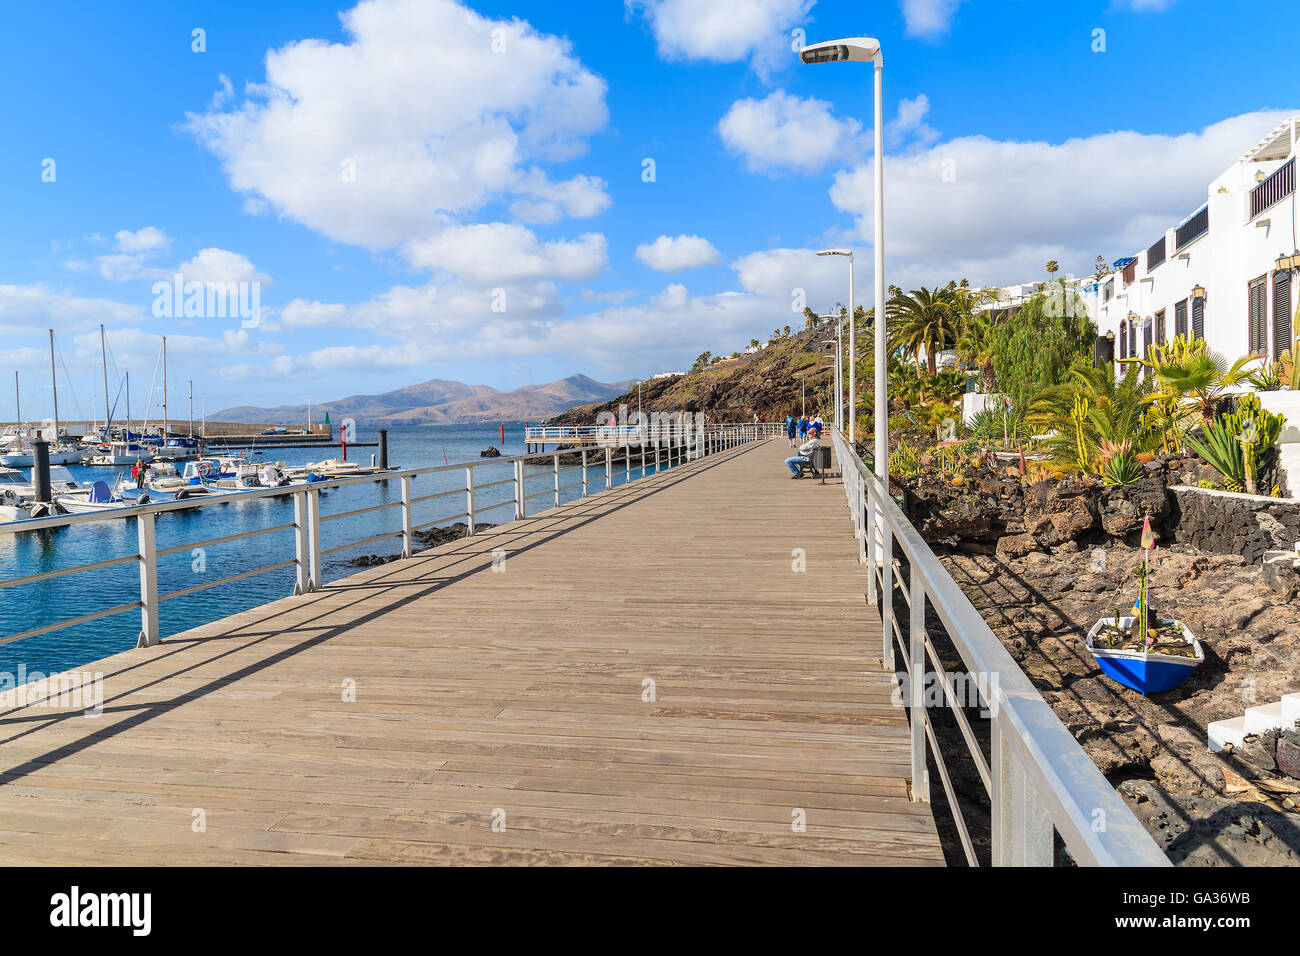 Promenade entlang Meer im Ferienort Puerto del Carmen Urlaub, Lanzarote, Kanarische Inseln, Spanien Stockfoto